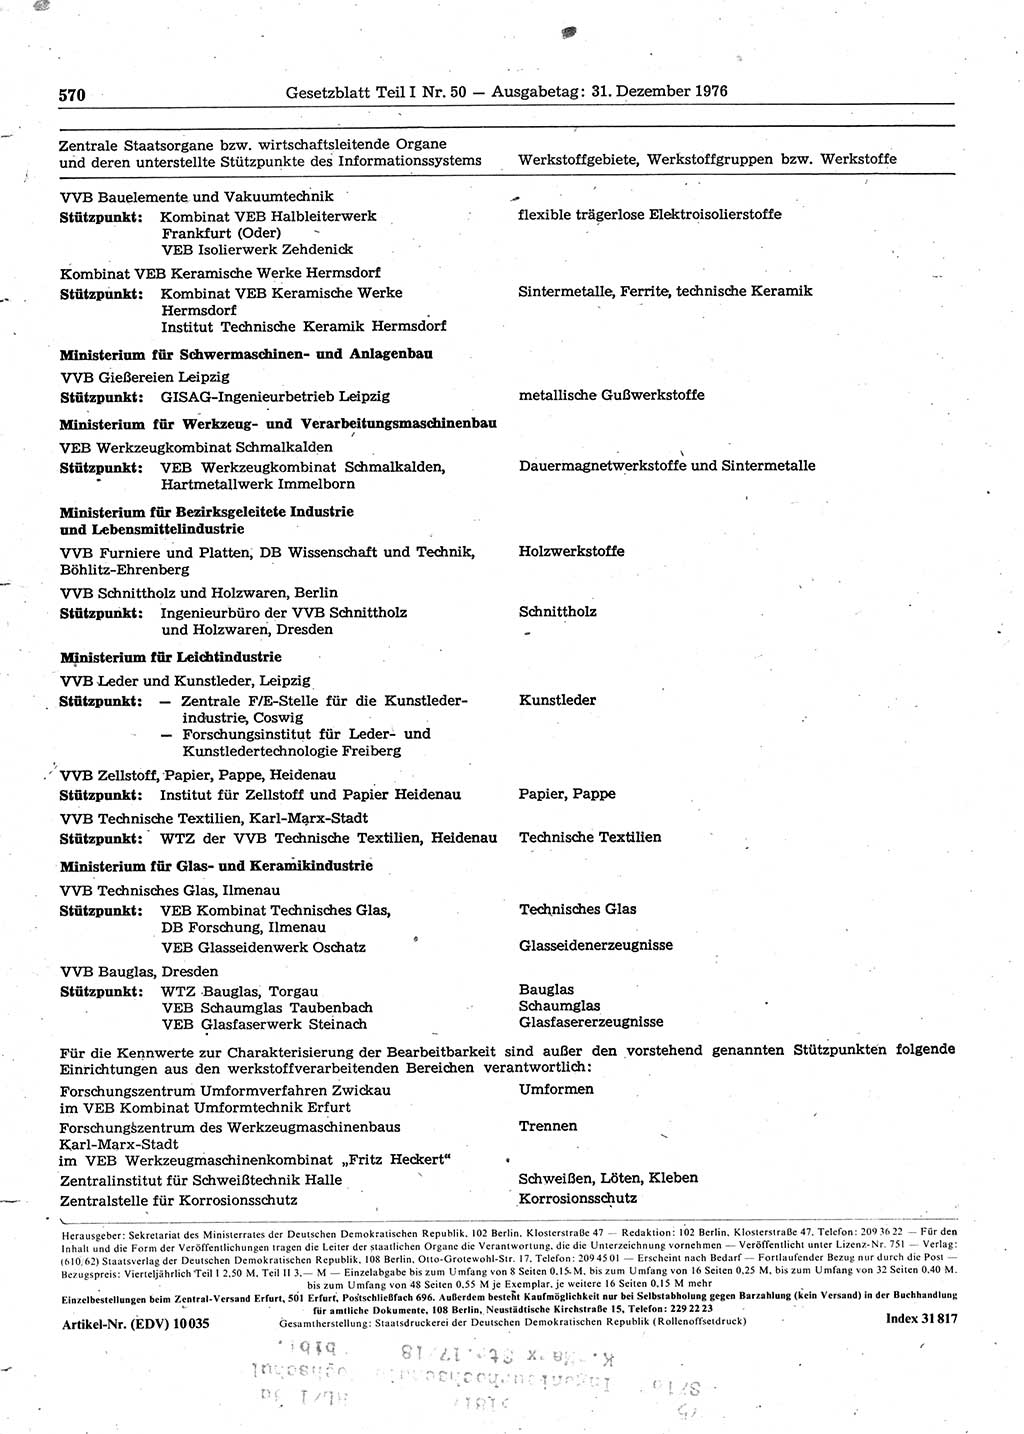 Gesetzblatt (GBl.) der Deutschen Demokratischen Republik (DDR) Teil Ⅰ 1976, Seite 570 (GBl. DDR Ⅰ 1976, S. 570)